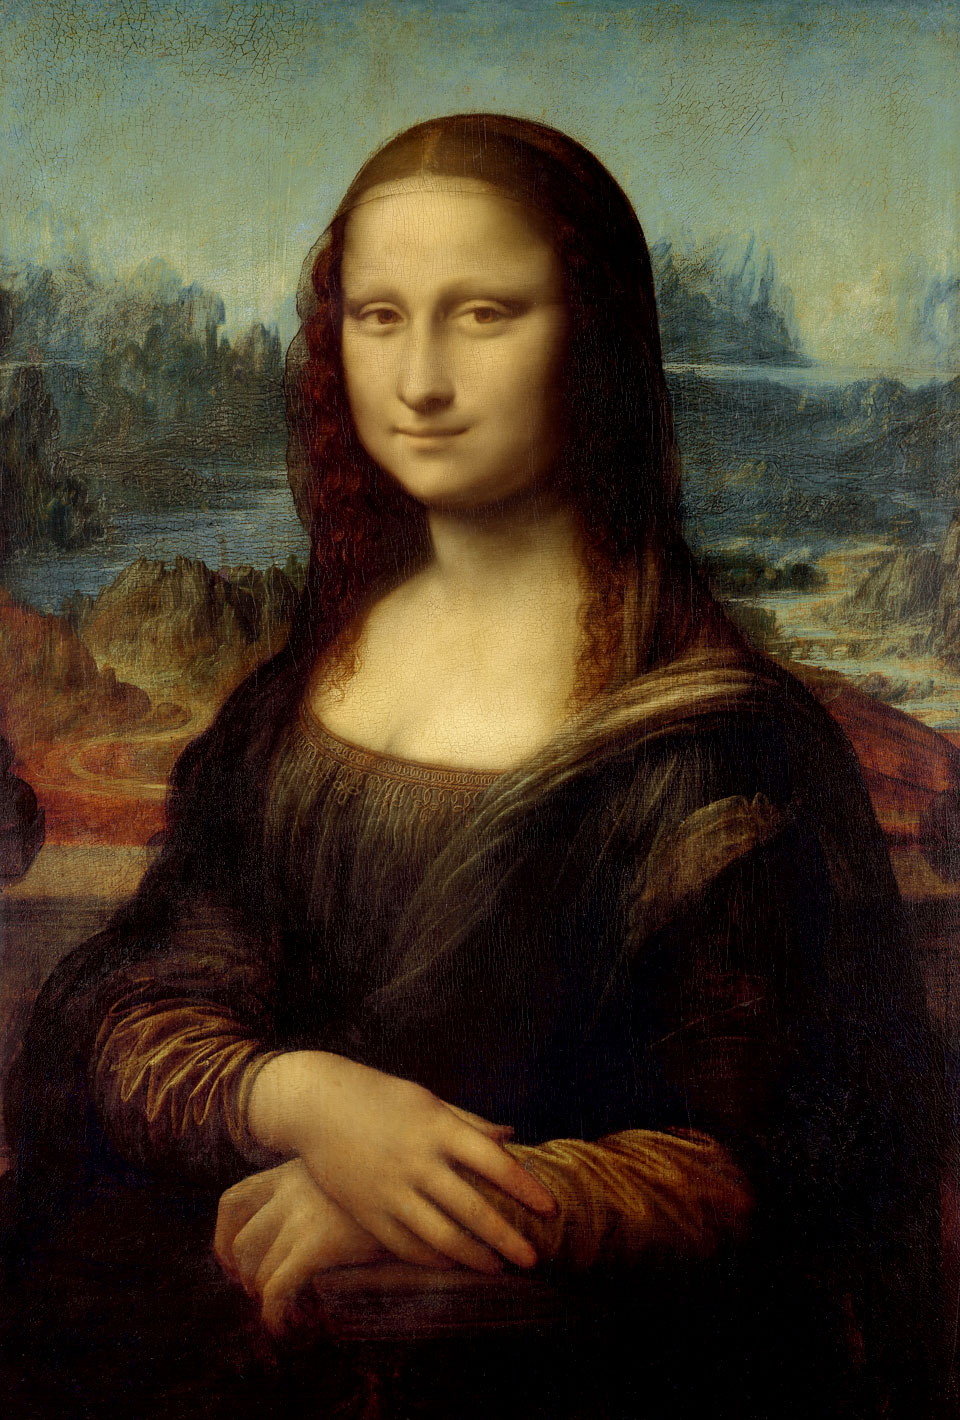 "Улыбка, которая скрыта вечностью: Джоконда Леонардо да Винчи", WeniZAYPaintings (живопись)